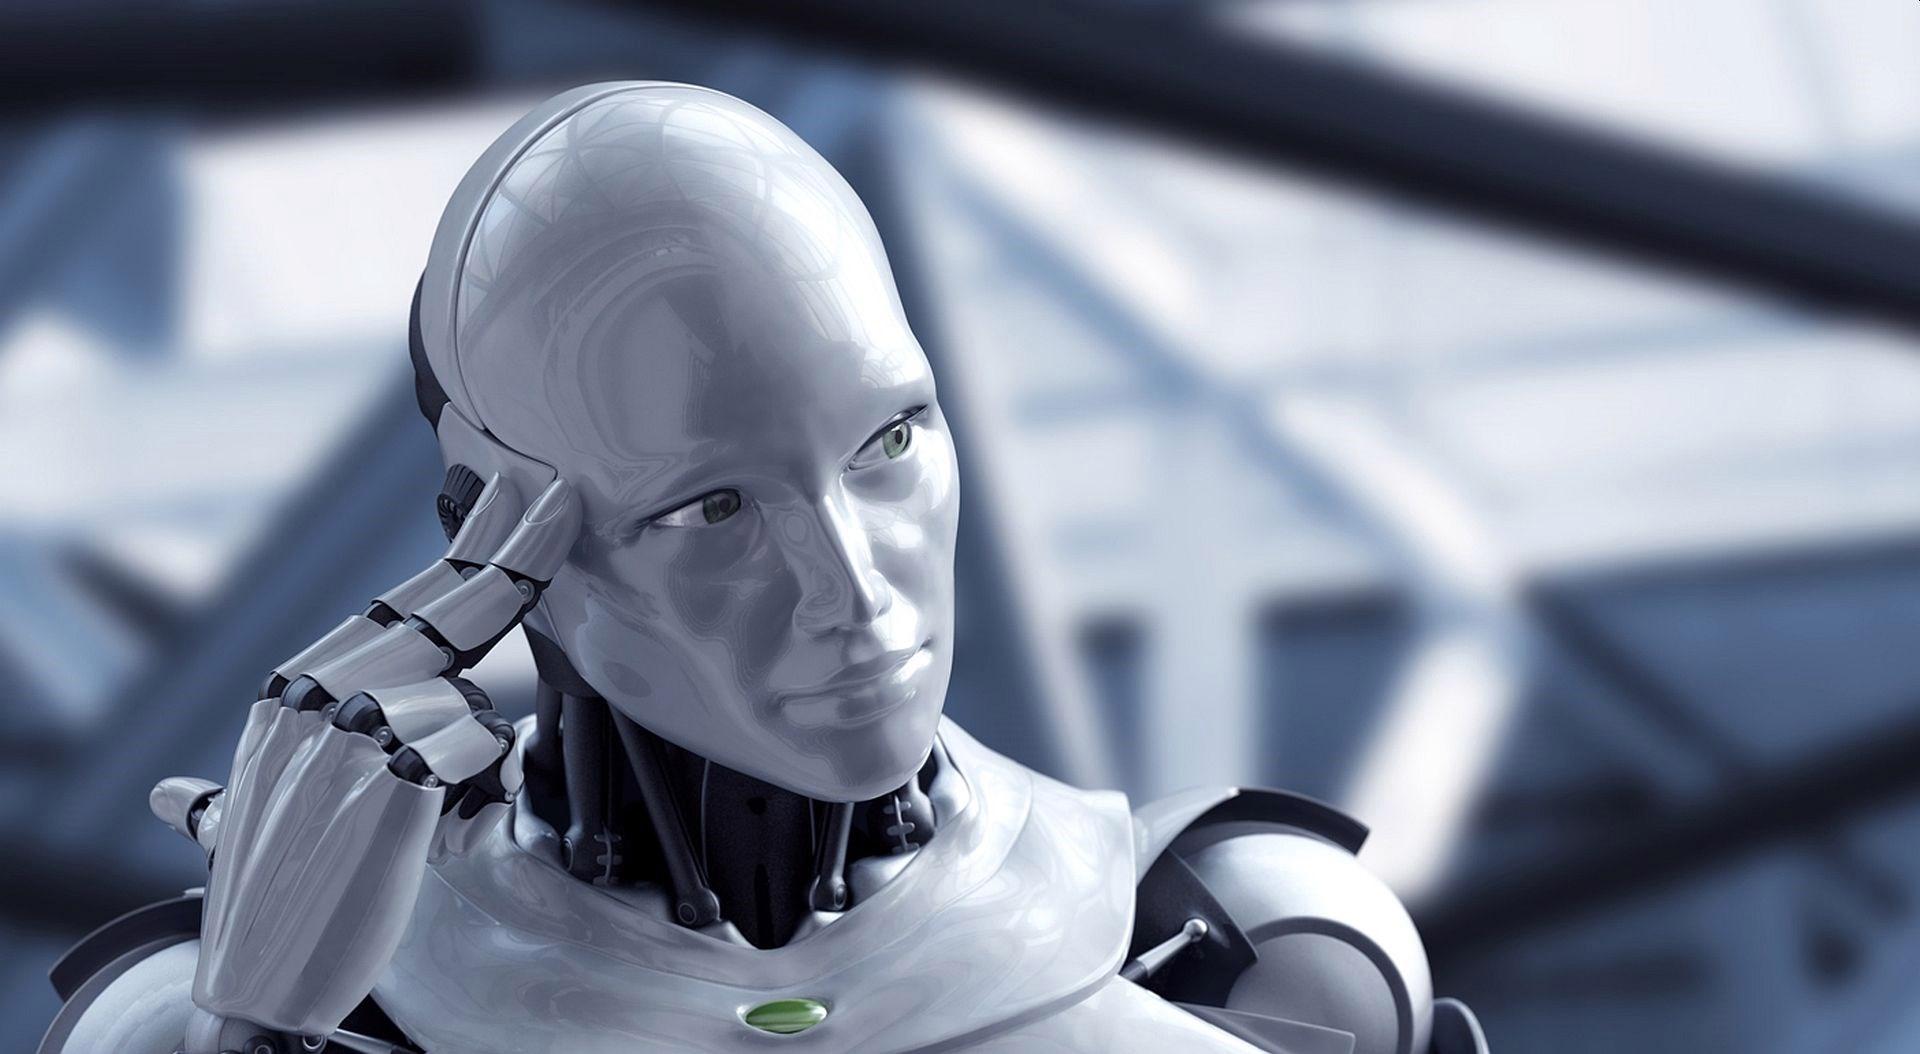 Çin, 2025 yılına kadar gelişmiş insansı robotlar üretmeyi planlıyor